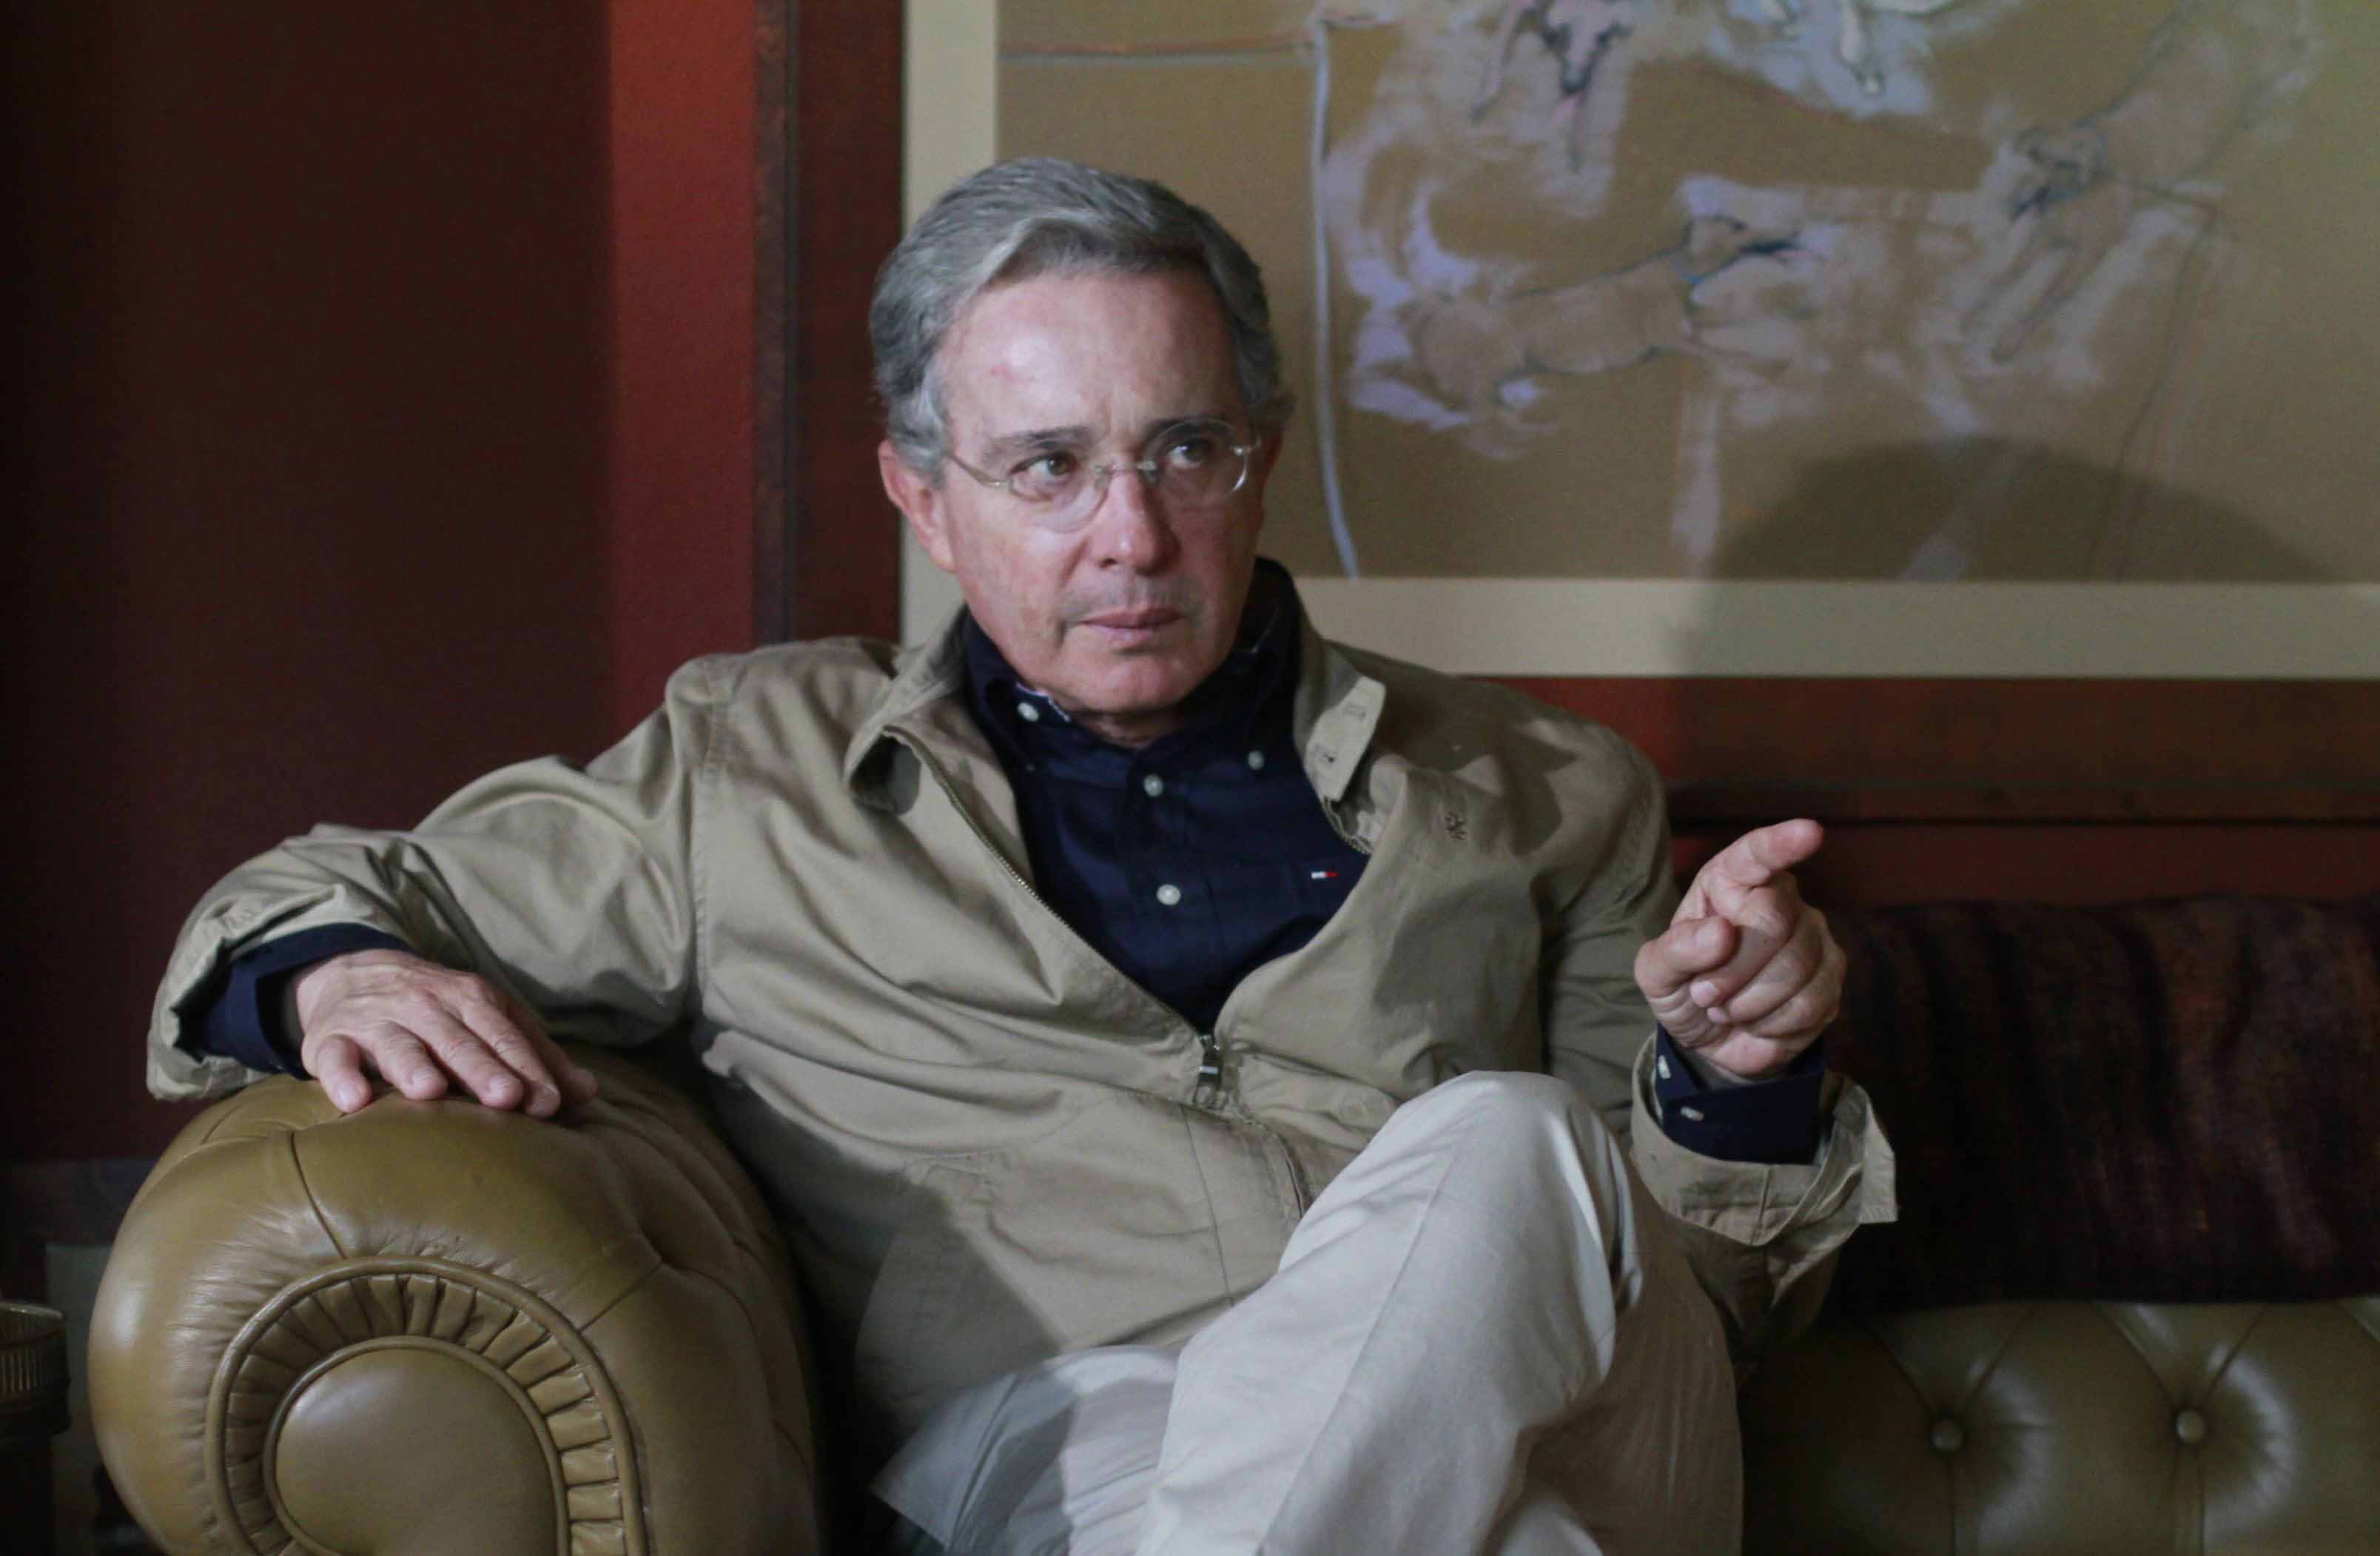 El grupo armado canceló el encuentro donde se discutirían las objeciones planteadas por la derecha radical liderada por Álvaro Uribe